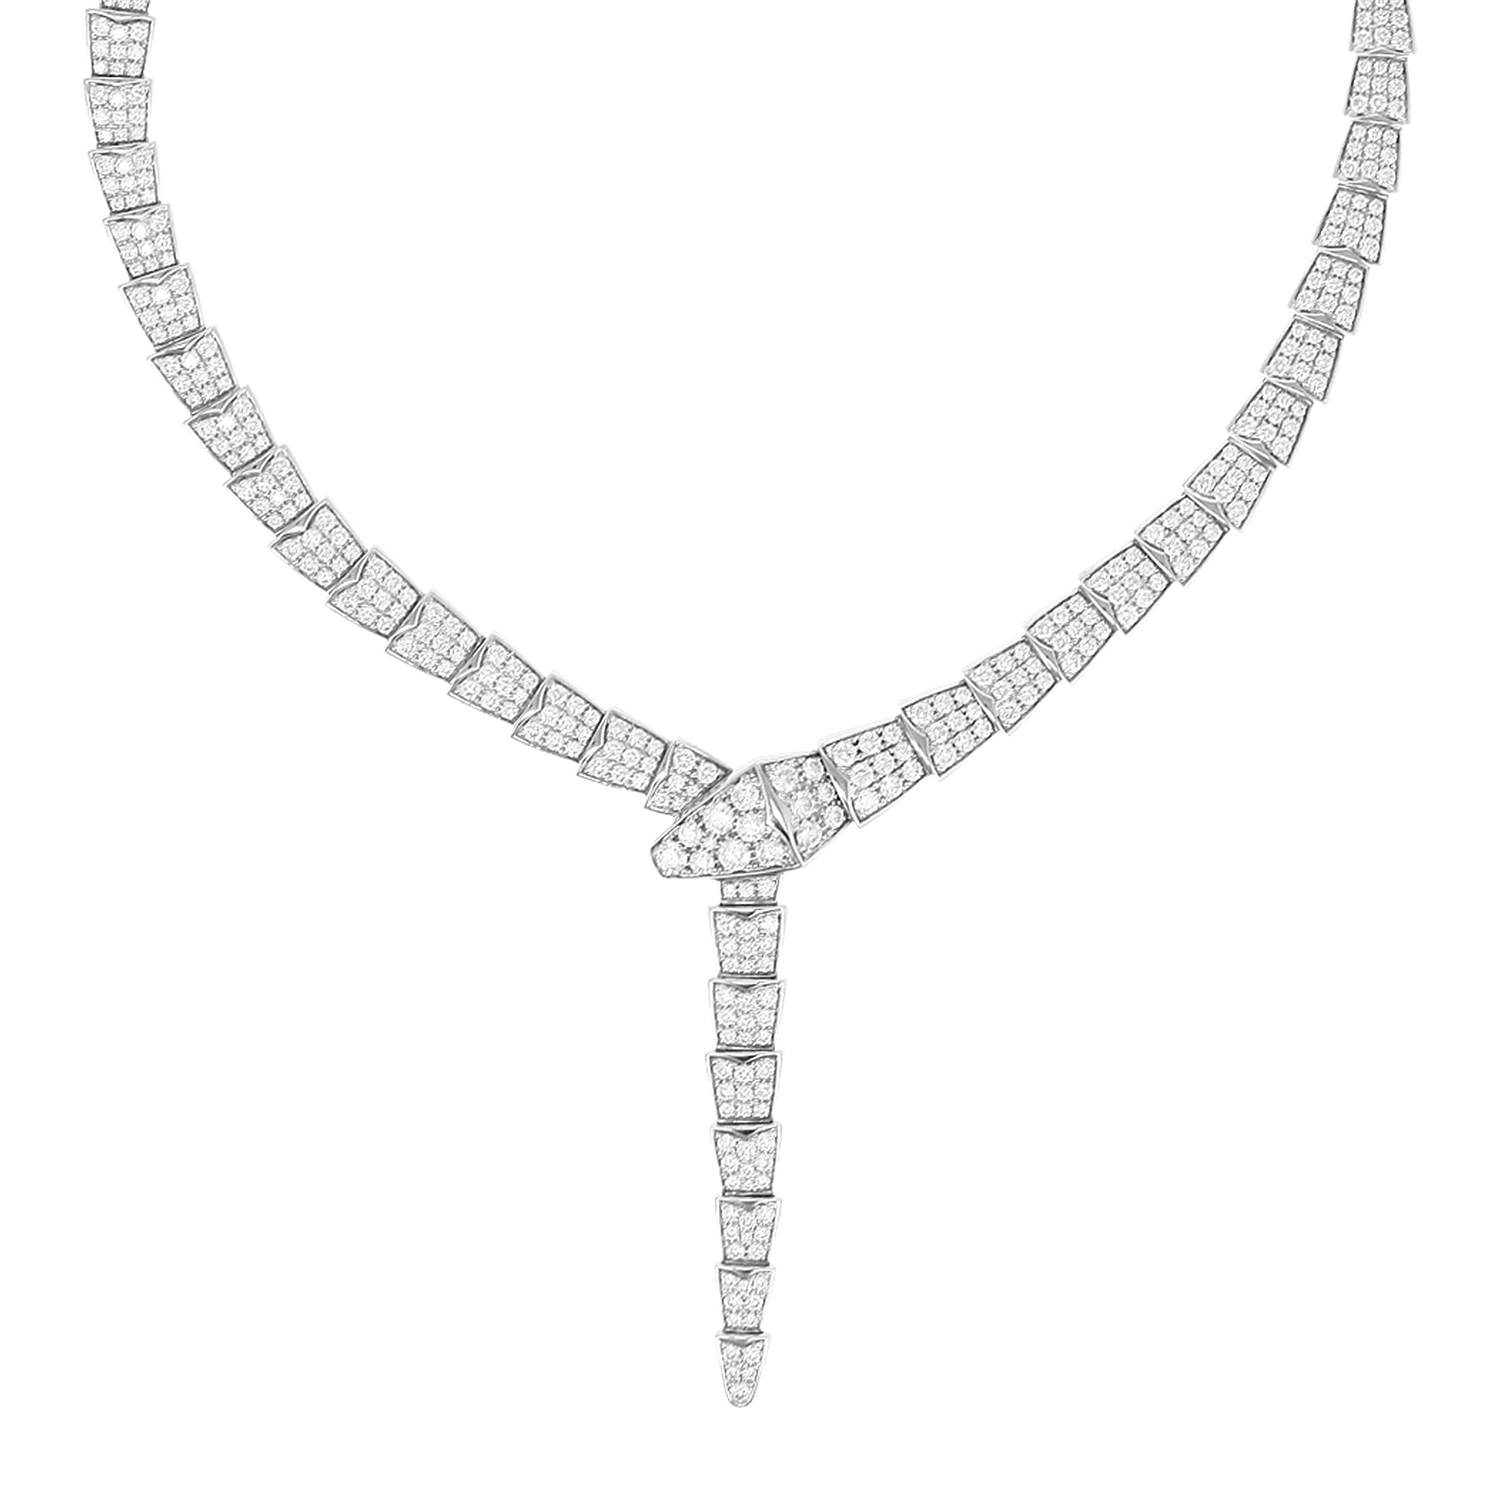 BVLGARI Serpenti Viper Slim Necklace White Gold Full Pavé Diamonds 351 –  Wrist Aficionado